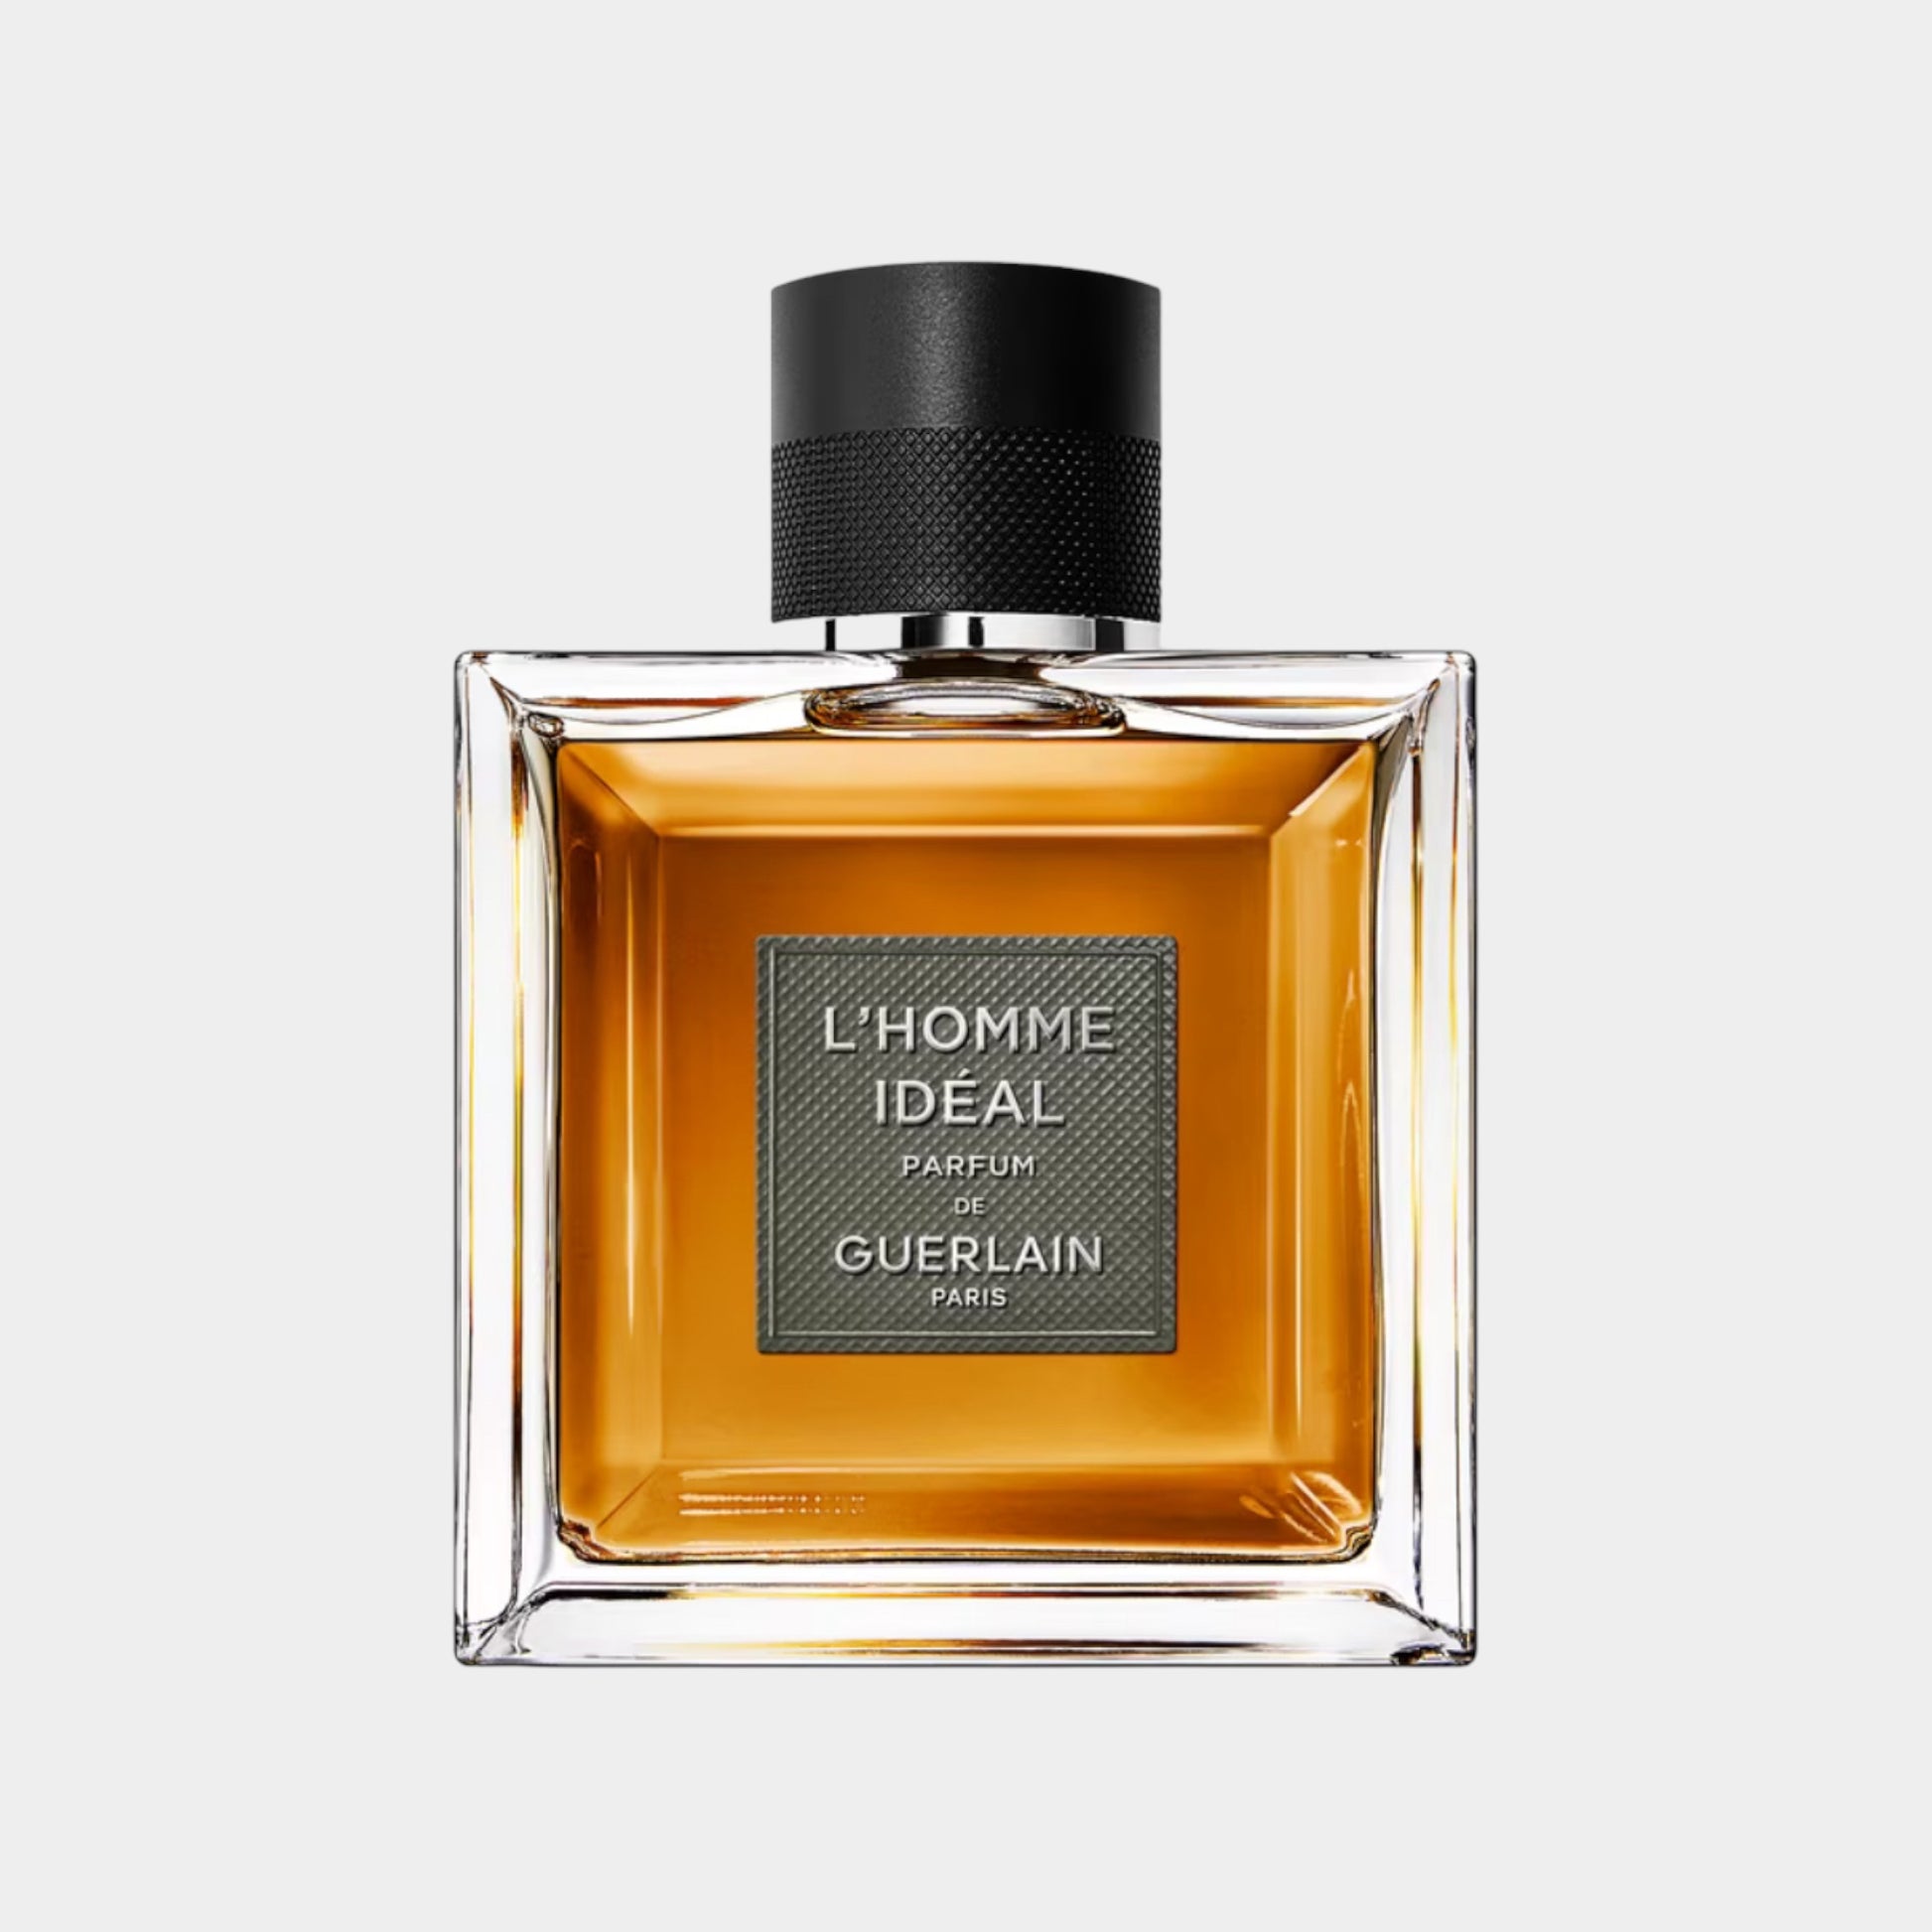 Guerlain L'homme Idéal Parfum